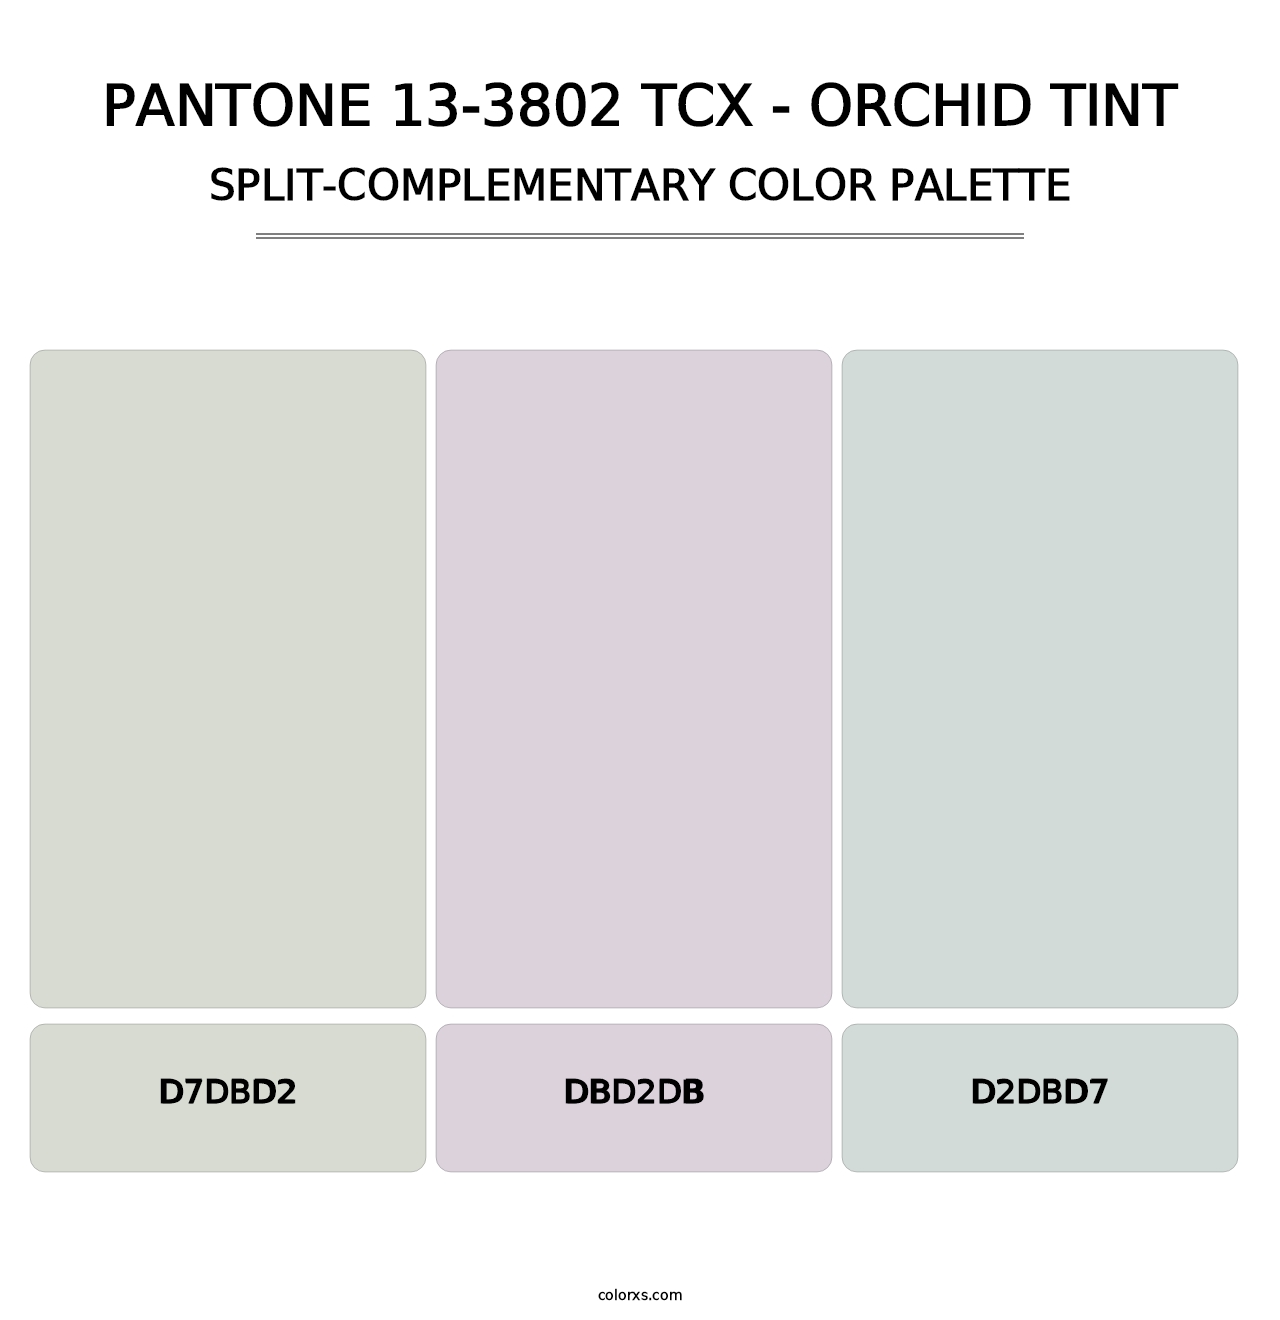 PANTONE 13-3802 TCX - Orchid Tint - Split-Complementary Color Palette